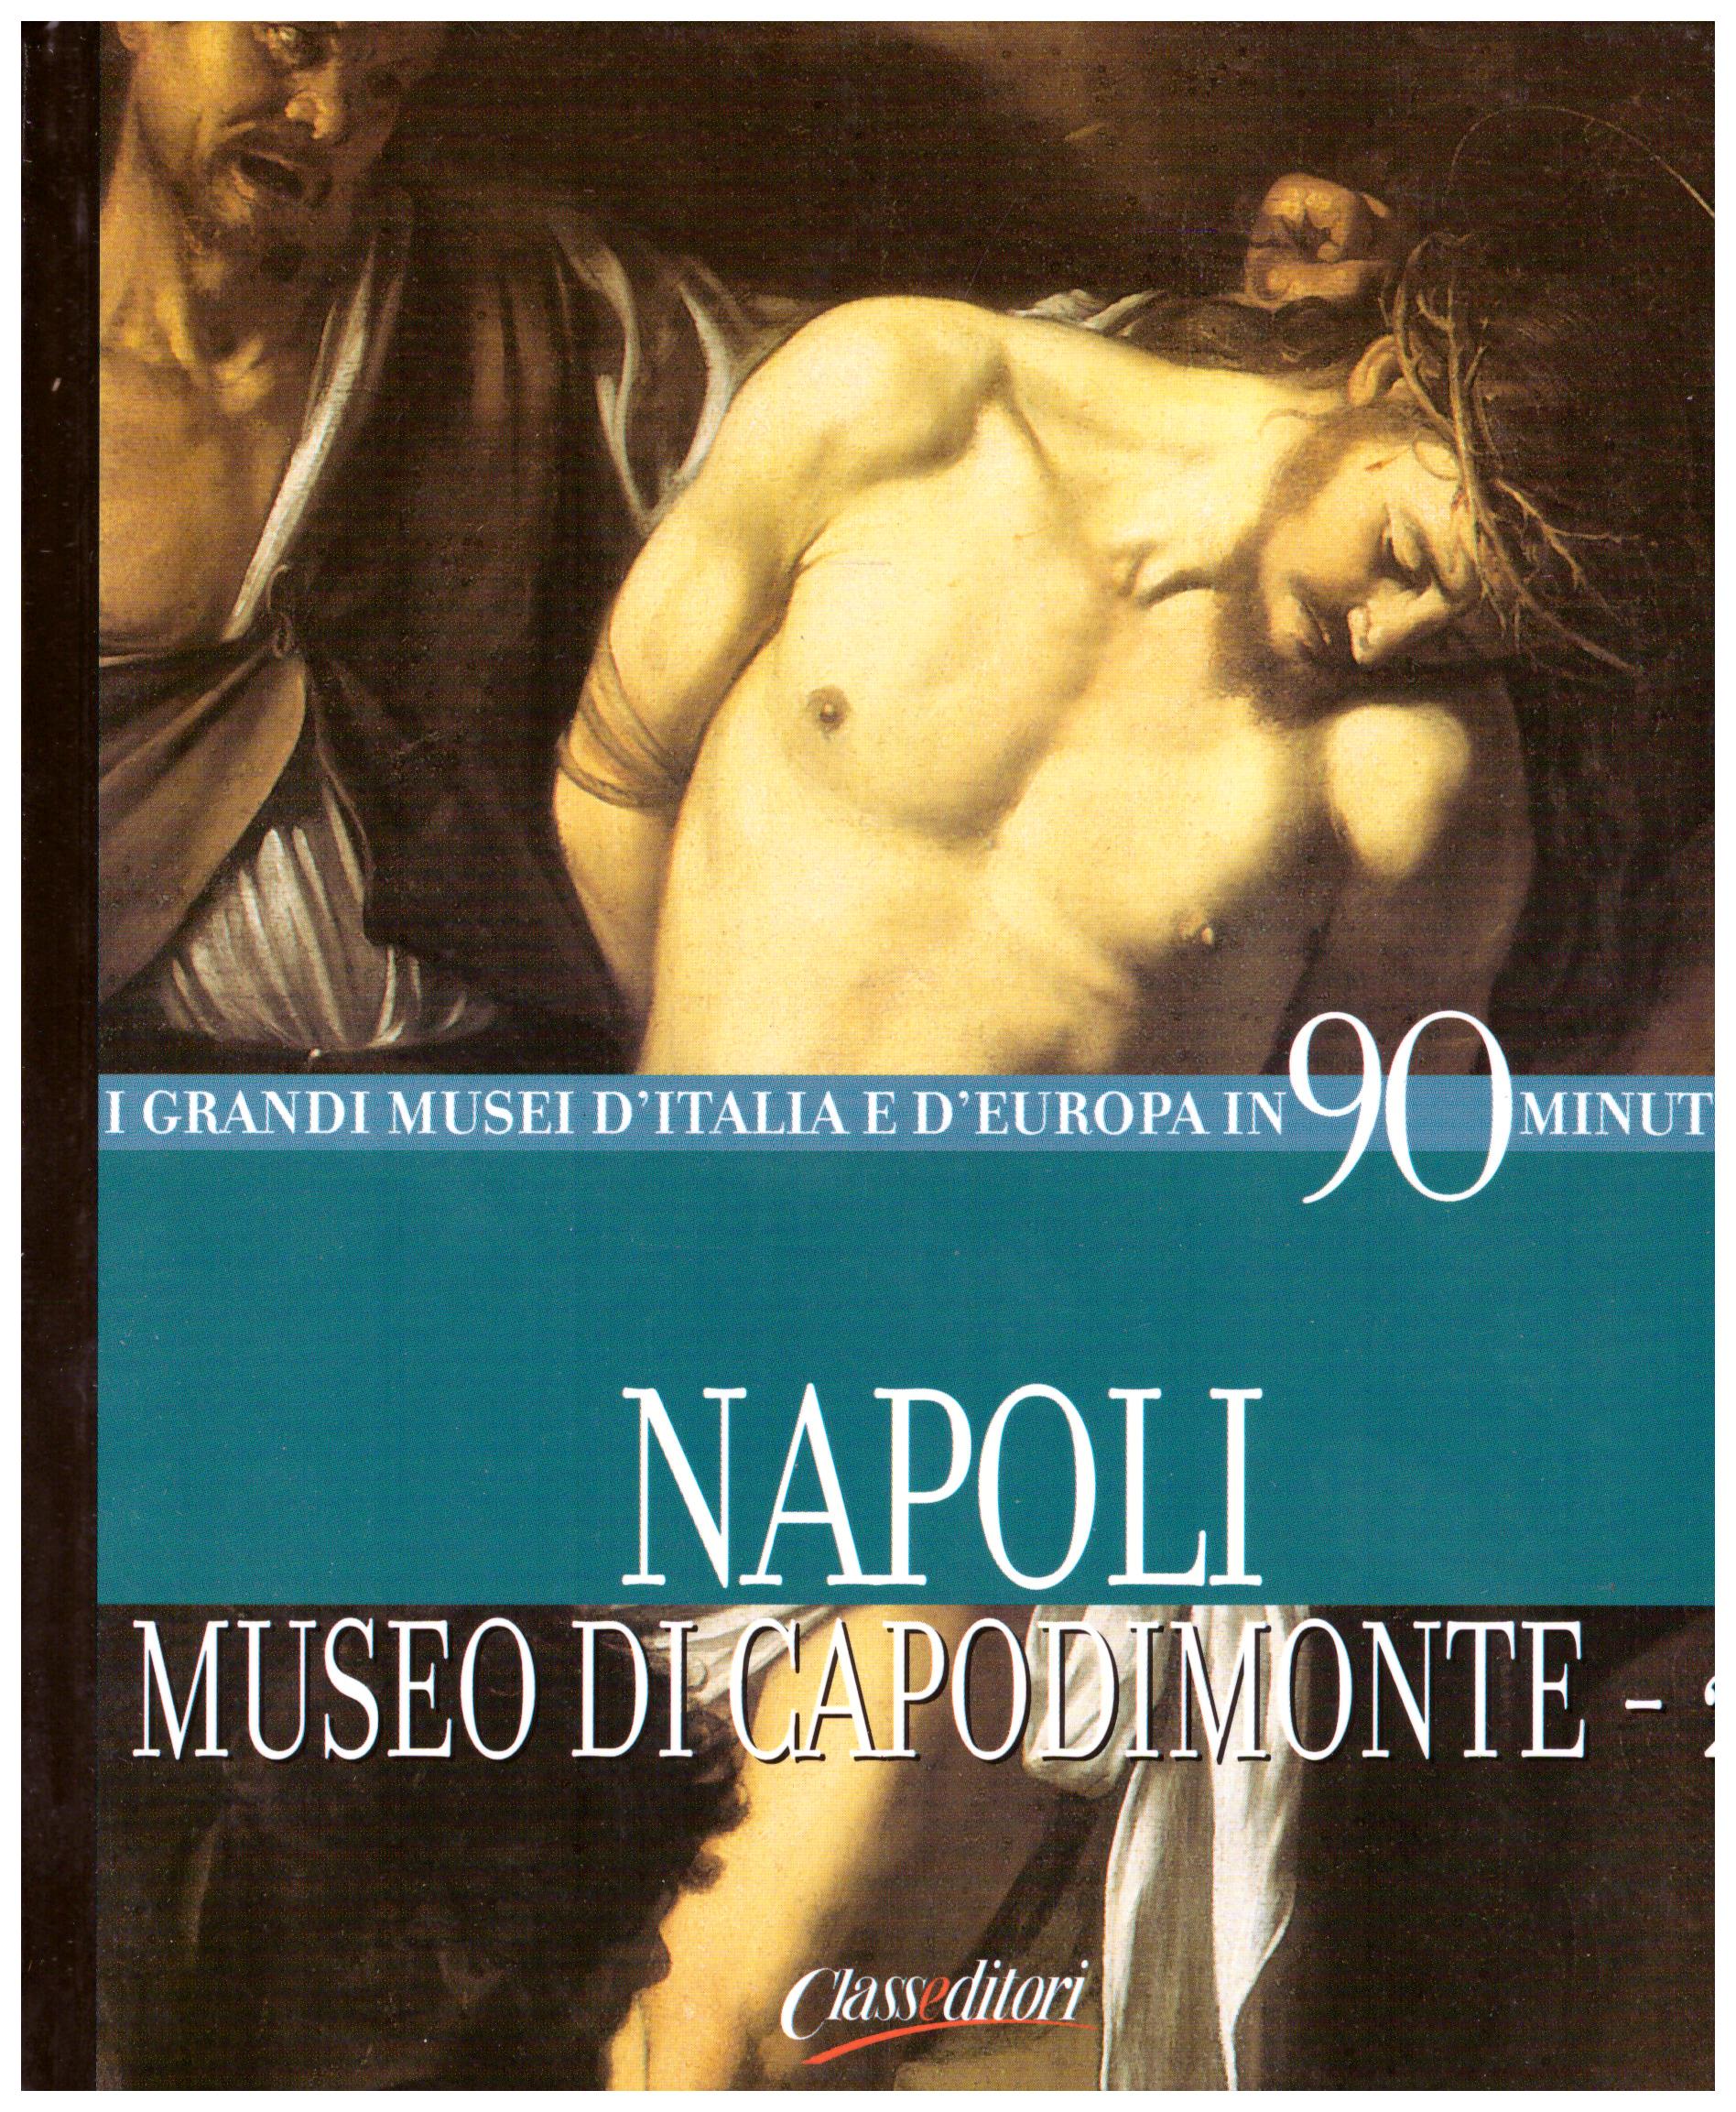 Titolo: I grandi musei d'italia e d'Europa in 90 minuti, Napoli Museo di Capodimonte-2 Autore : AA.VV.  Editore: class editori